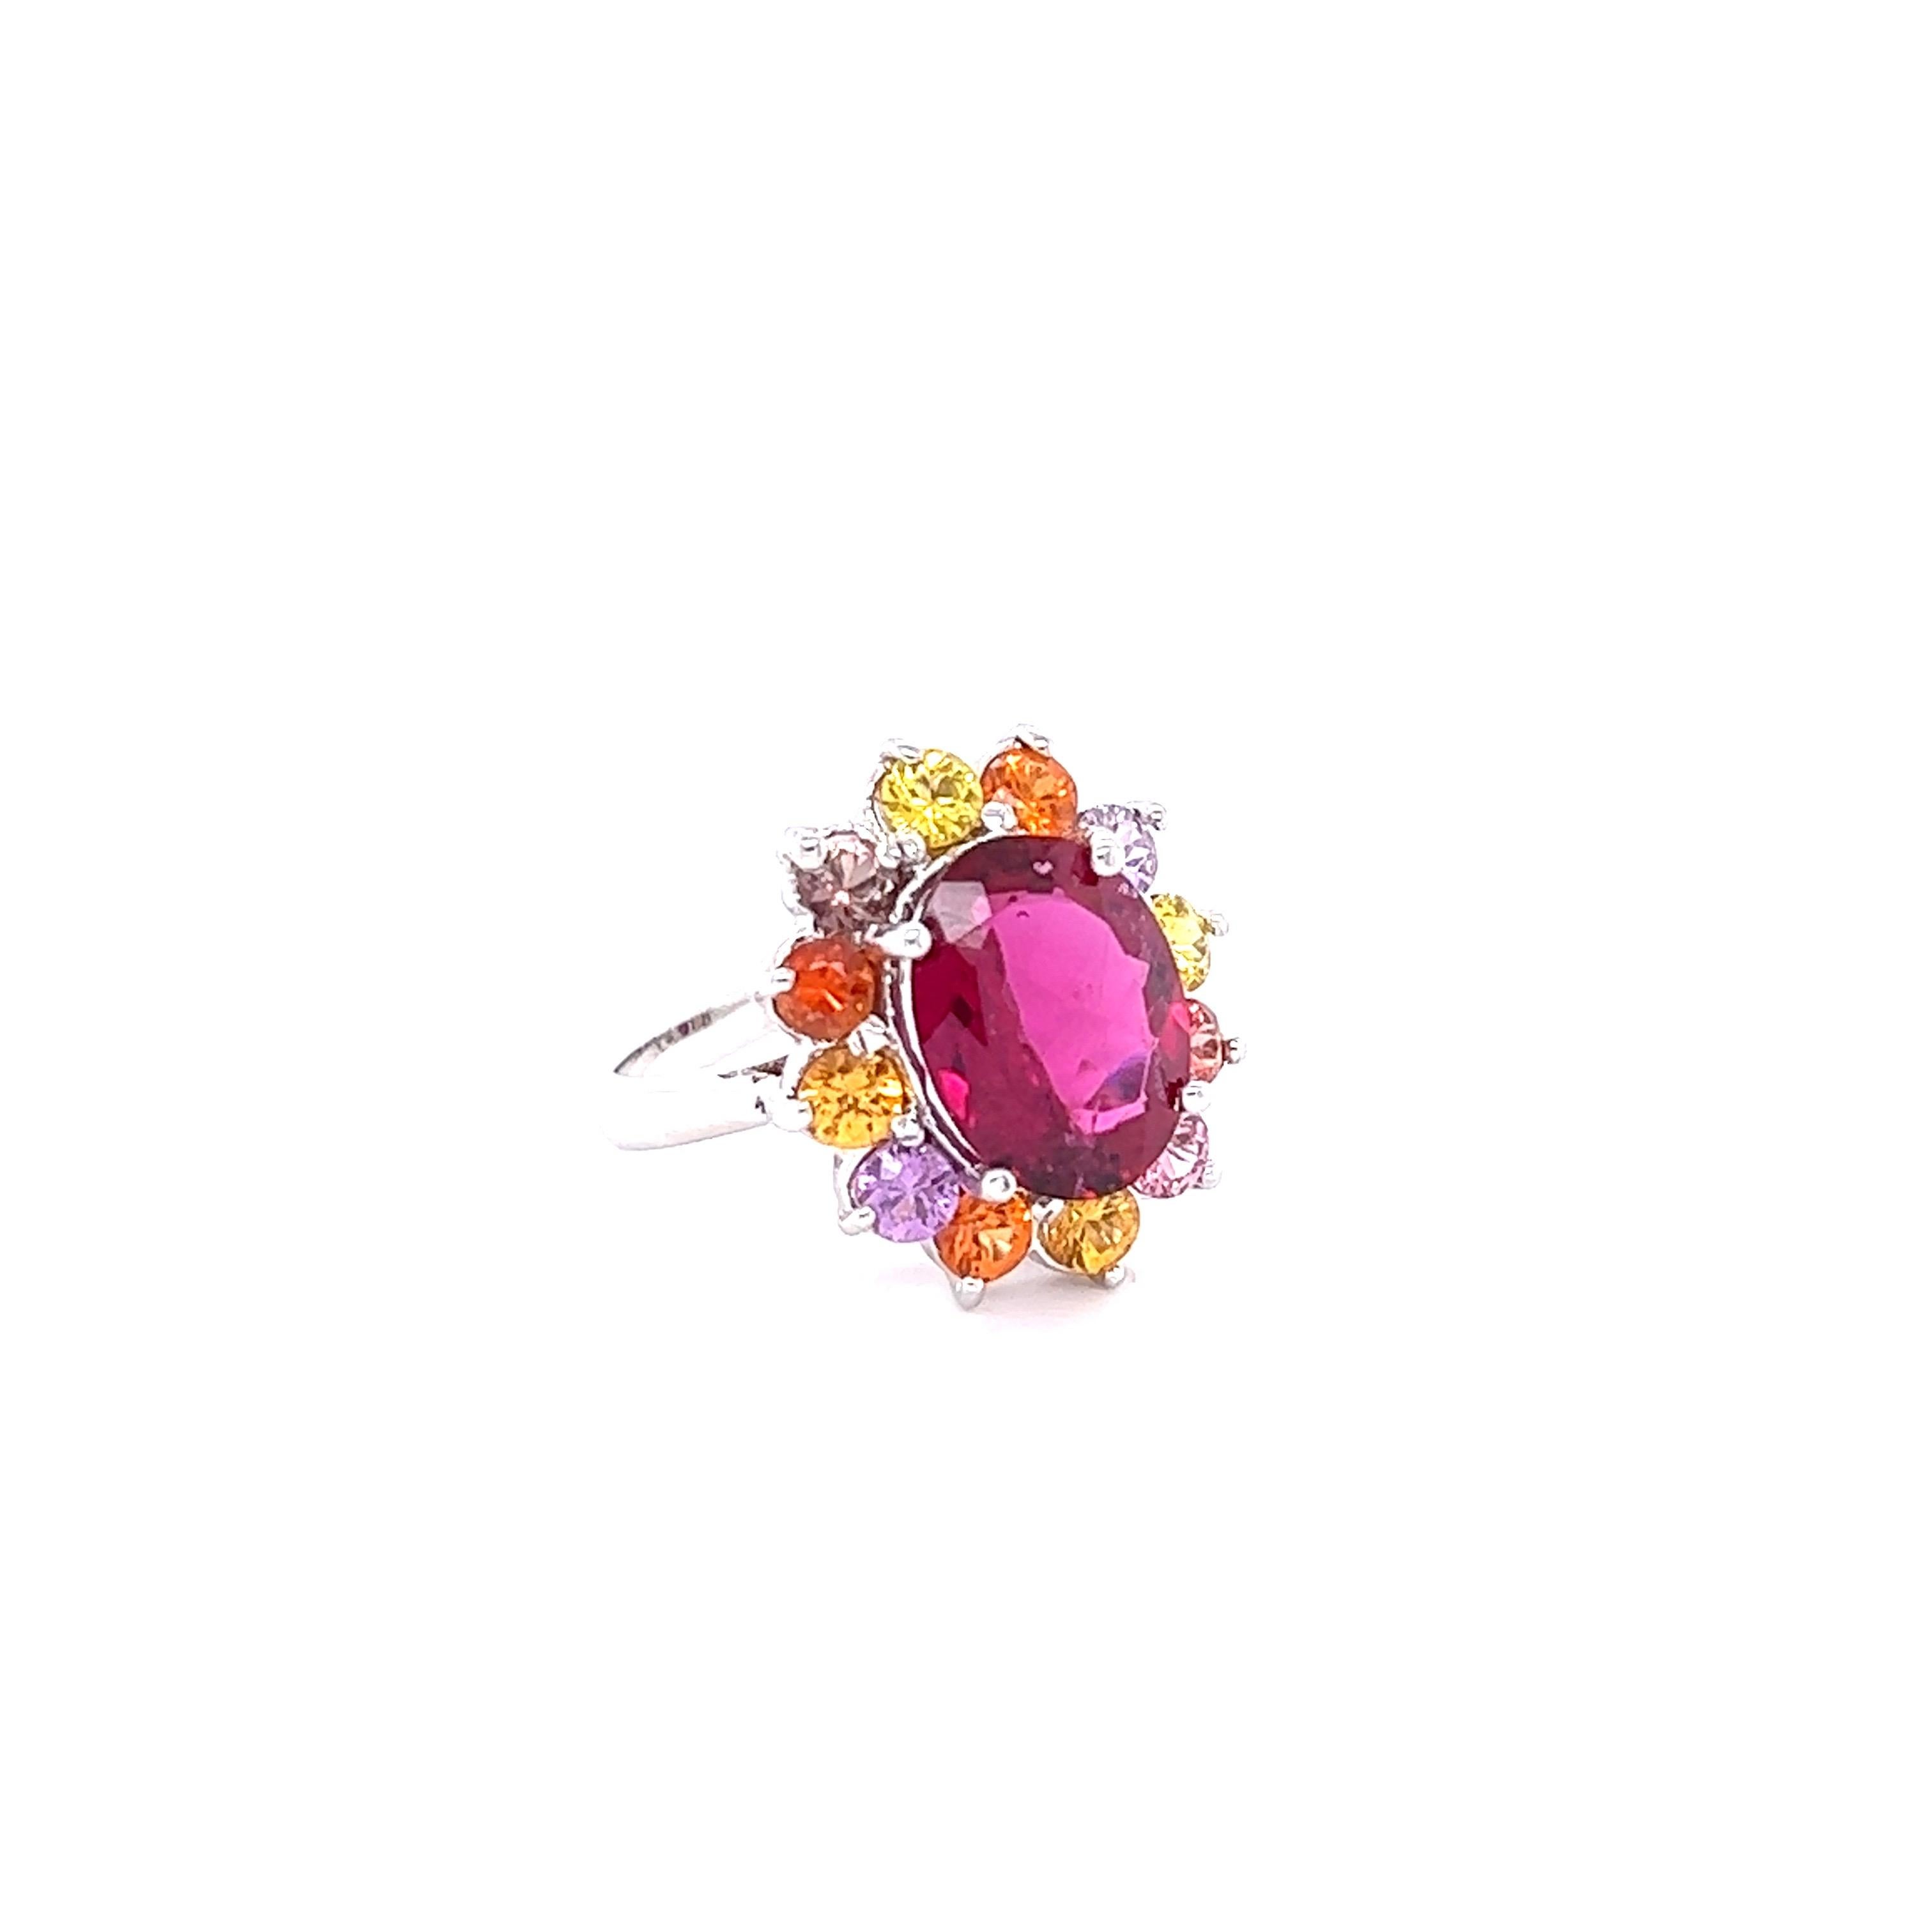 Dieser Ring hat einen 4,23 Karat Ovalschliff Hot Pink Turmalin (Rubellit) und ist elegant umgeben von 12 Rundschliff Multi-Colored Sapphires, die 2,30 Karat wiegen. Das Gesamtkaratgewicht dieses Rings beträgt 6,53 Karat.

Der Turmalin misst etwa 12